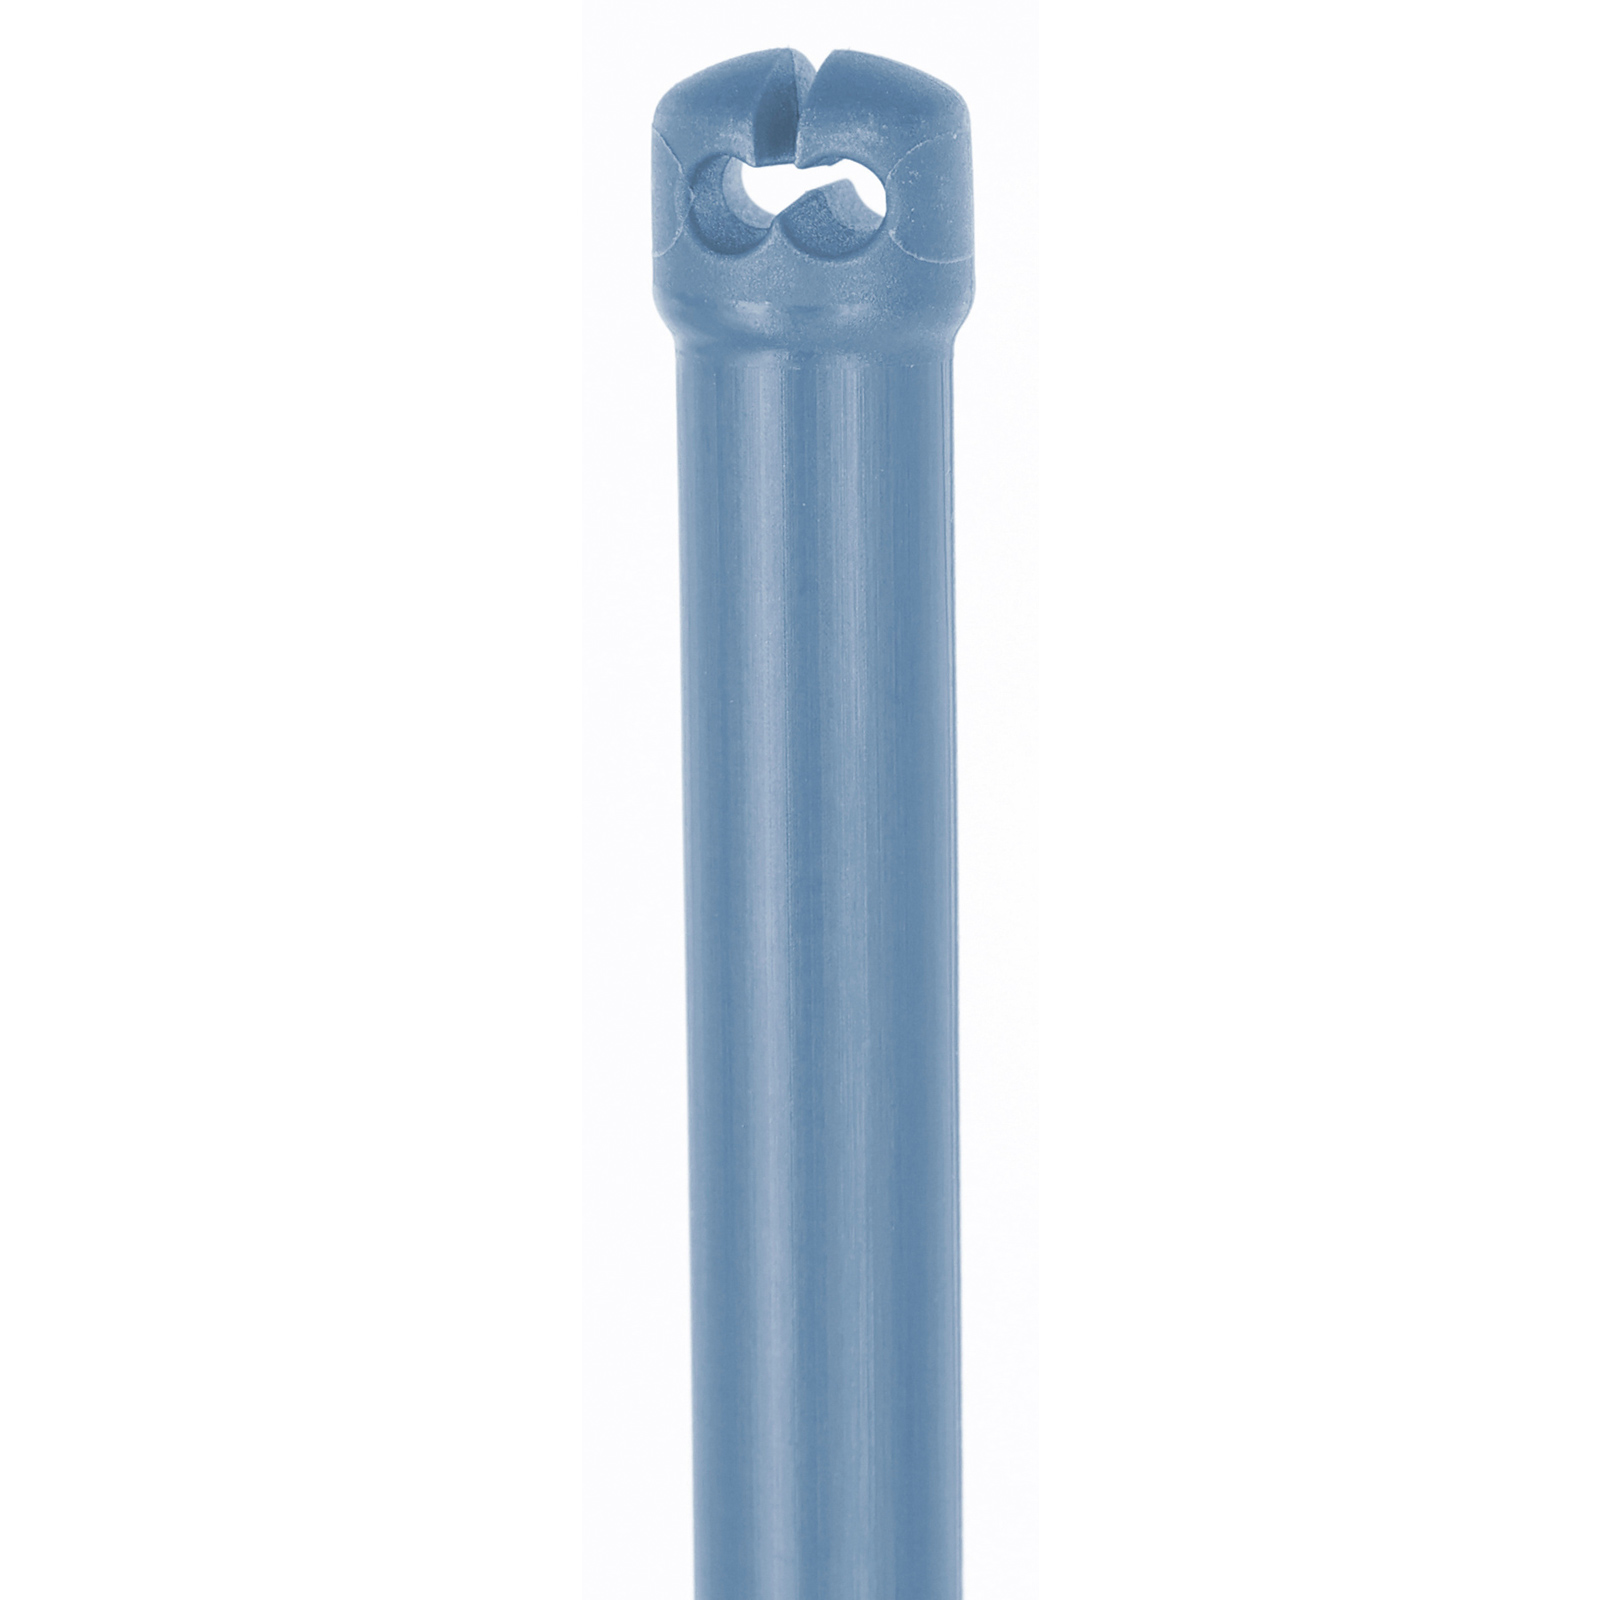 Piquet thermoplastique en fibre de verre Premium pour filet de clôture, double pointe, bleu 90 cm